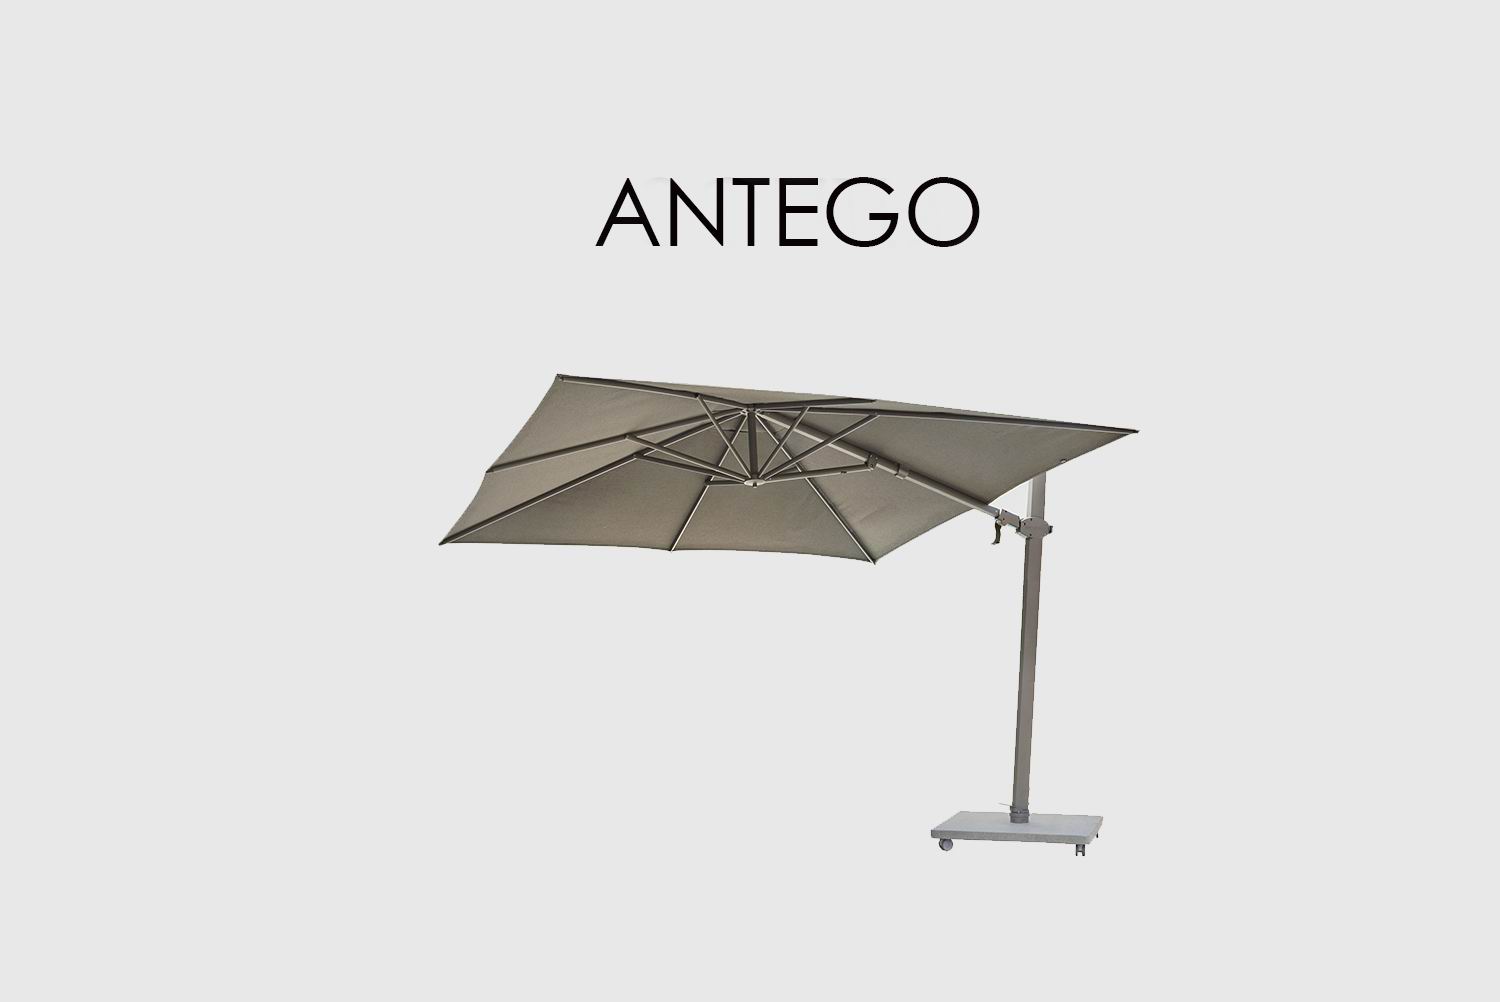 Зонт Antego